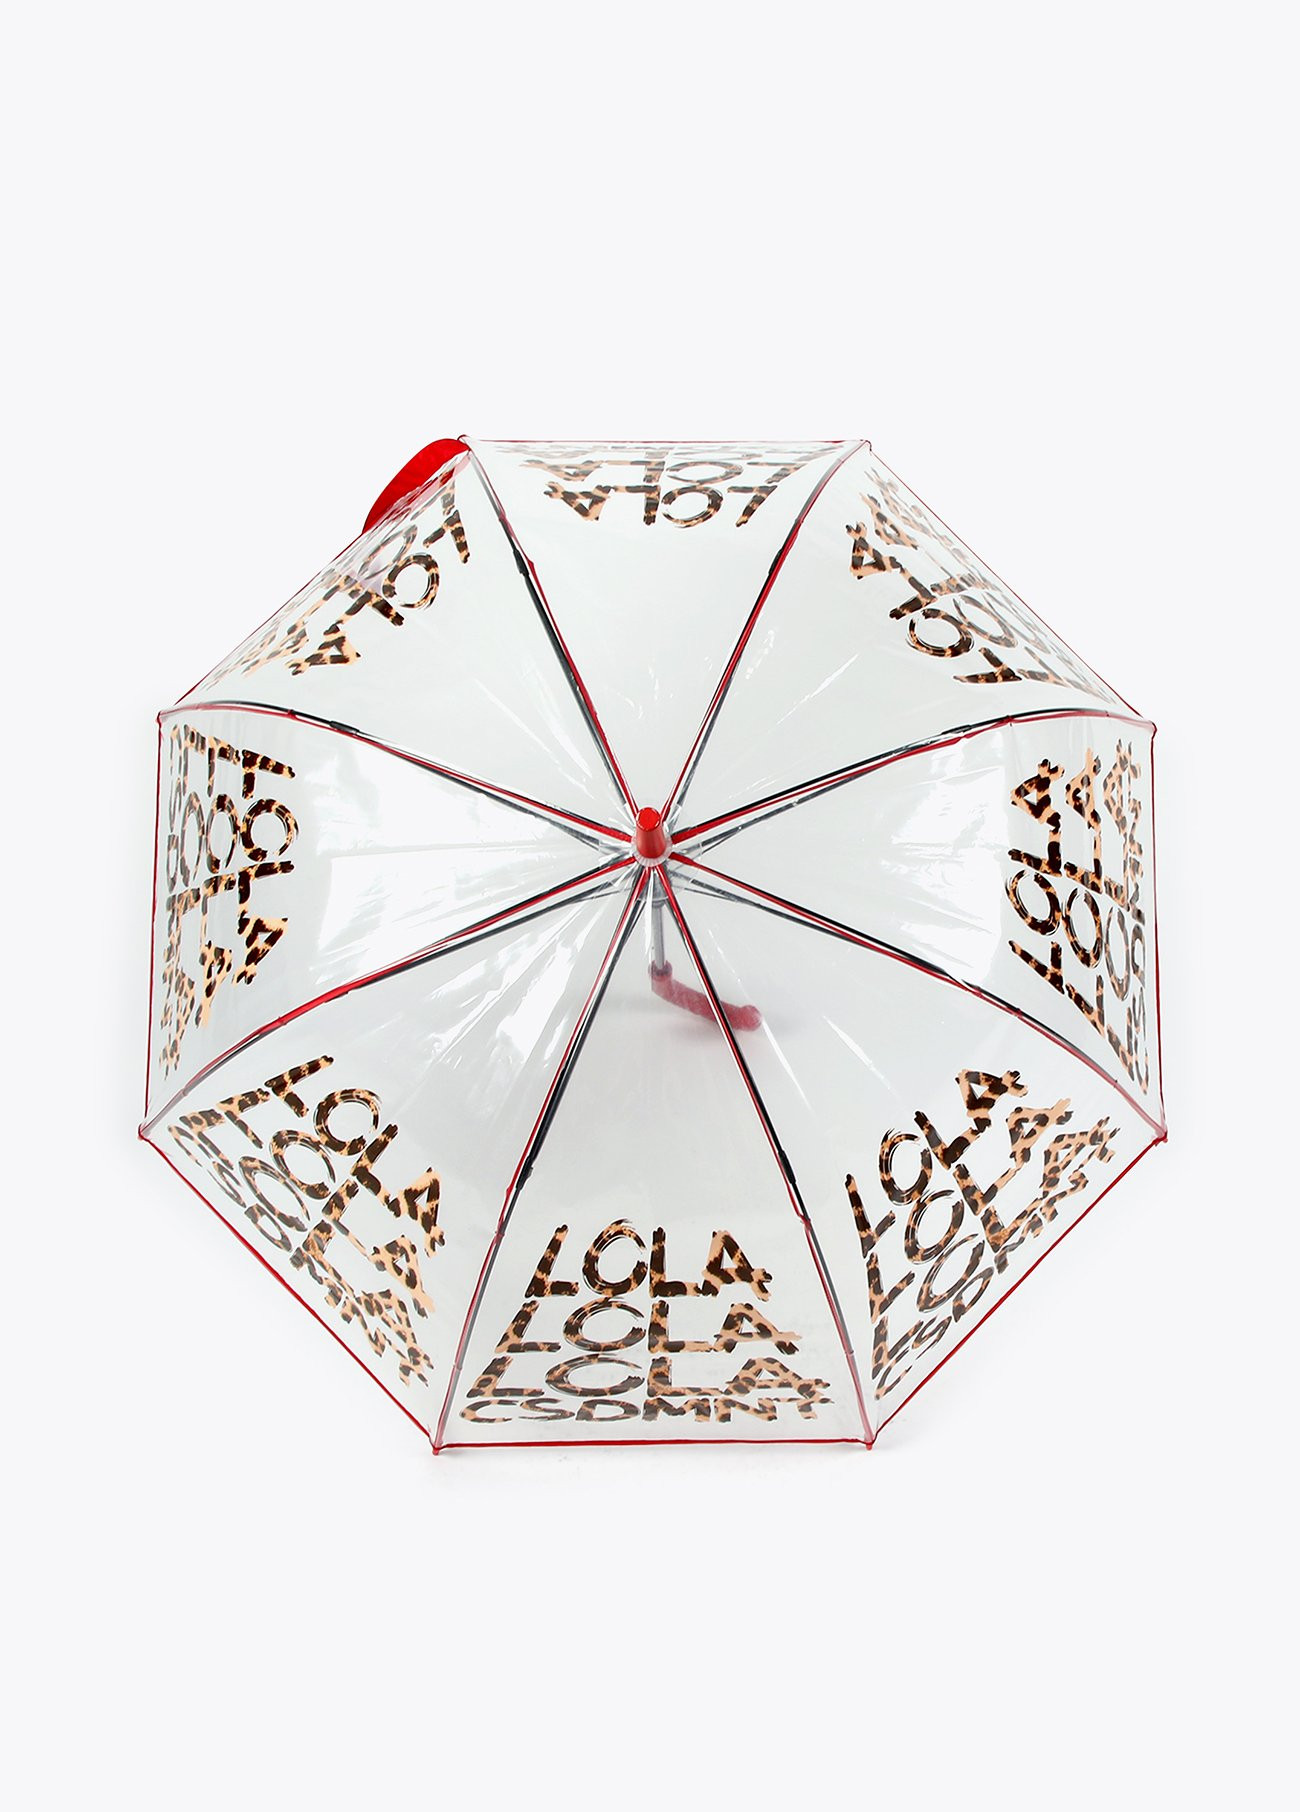 Grand parapluie transparent, Accessoires